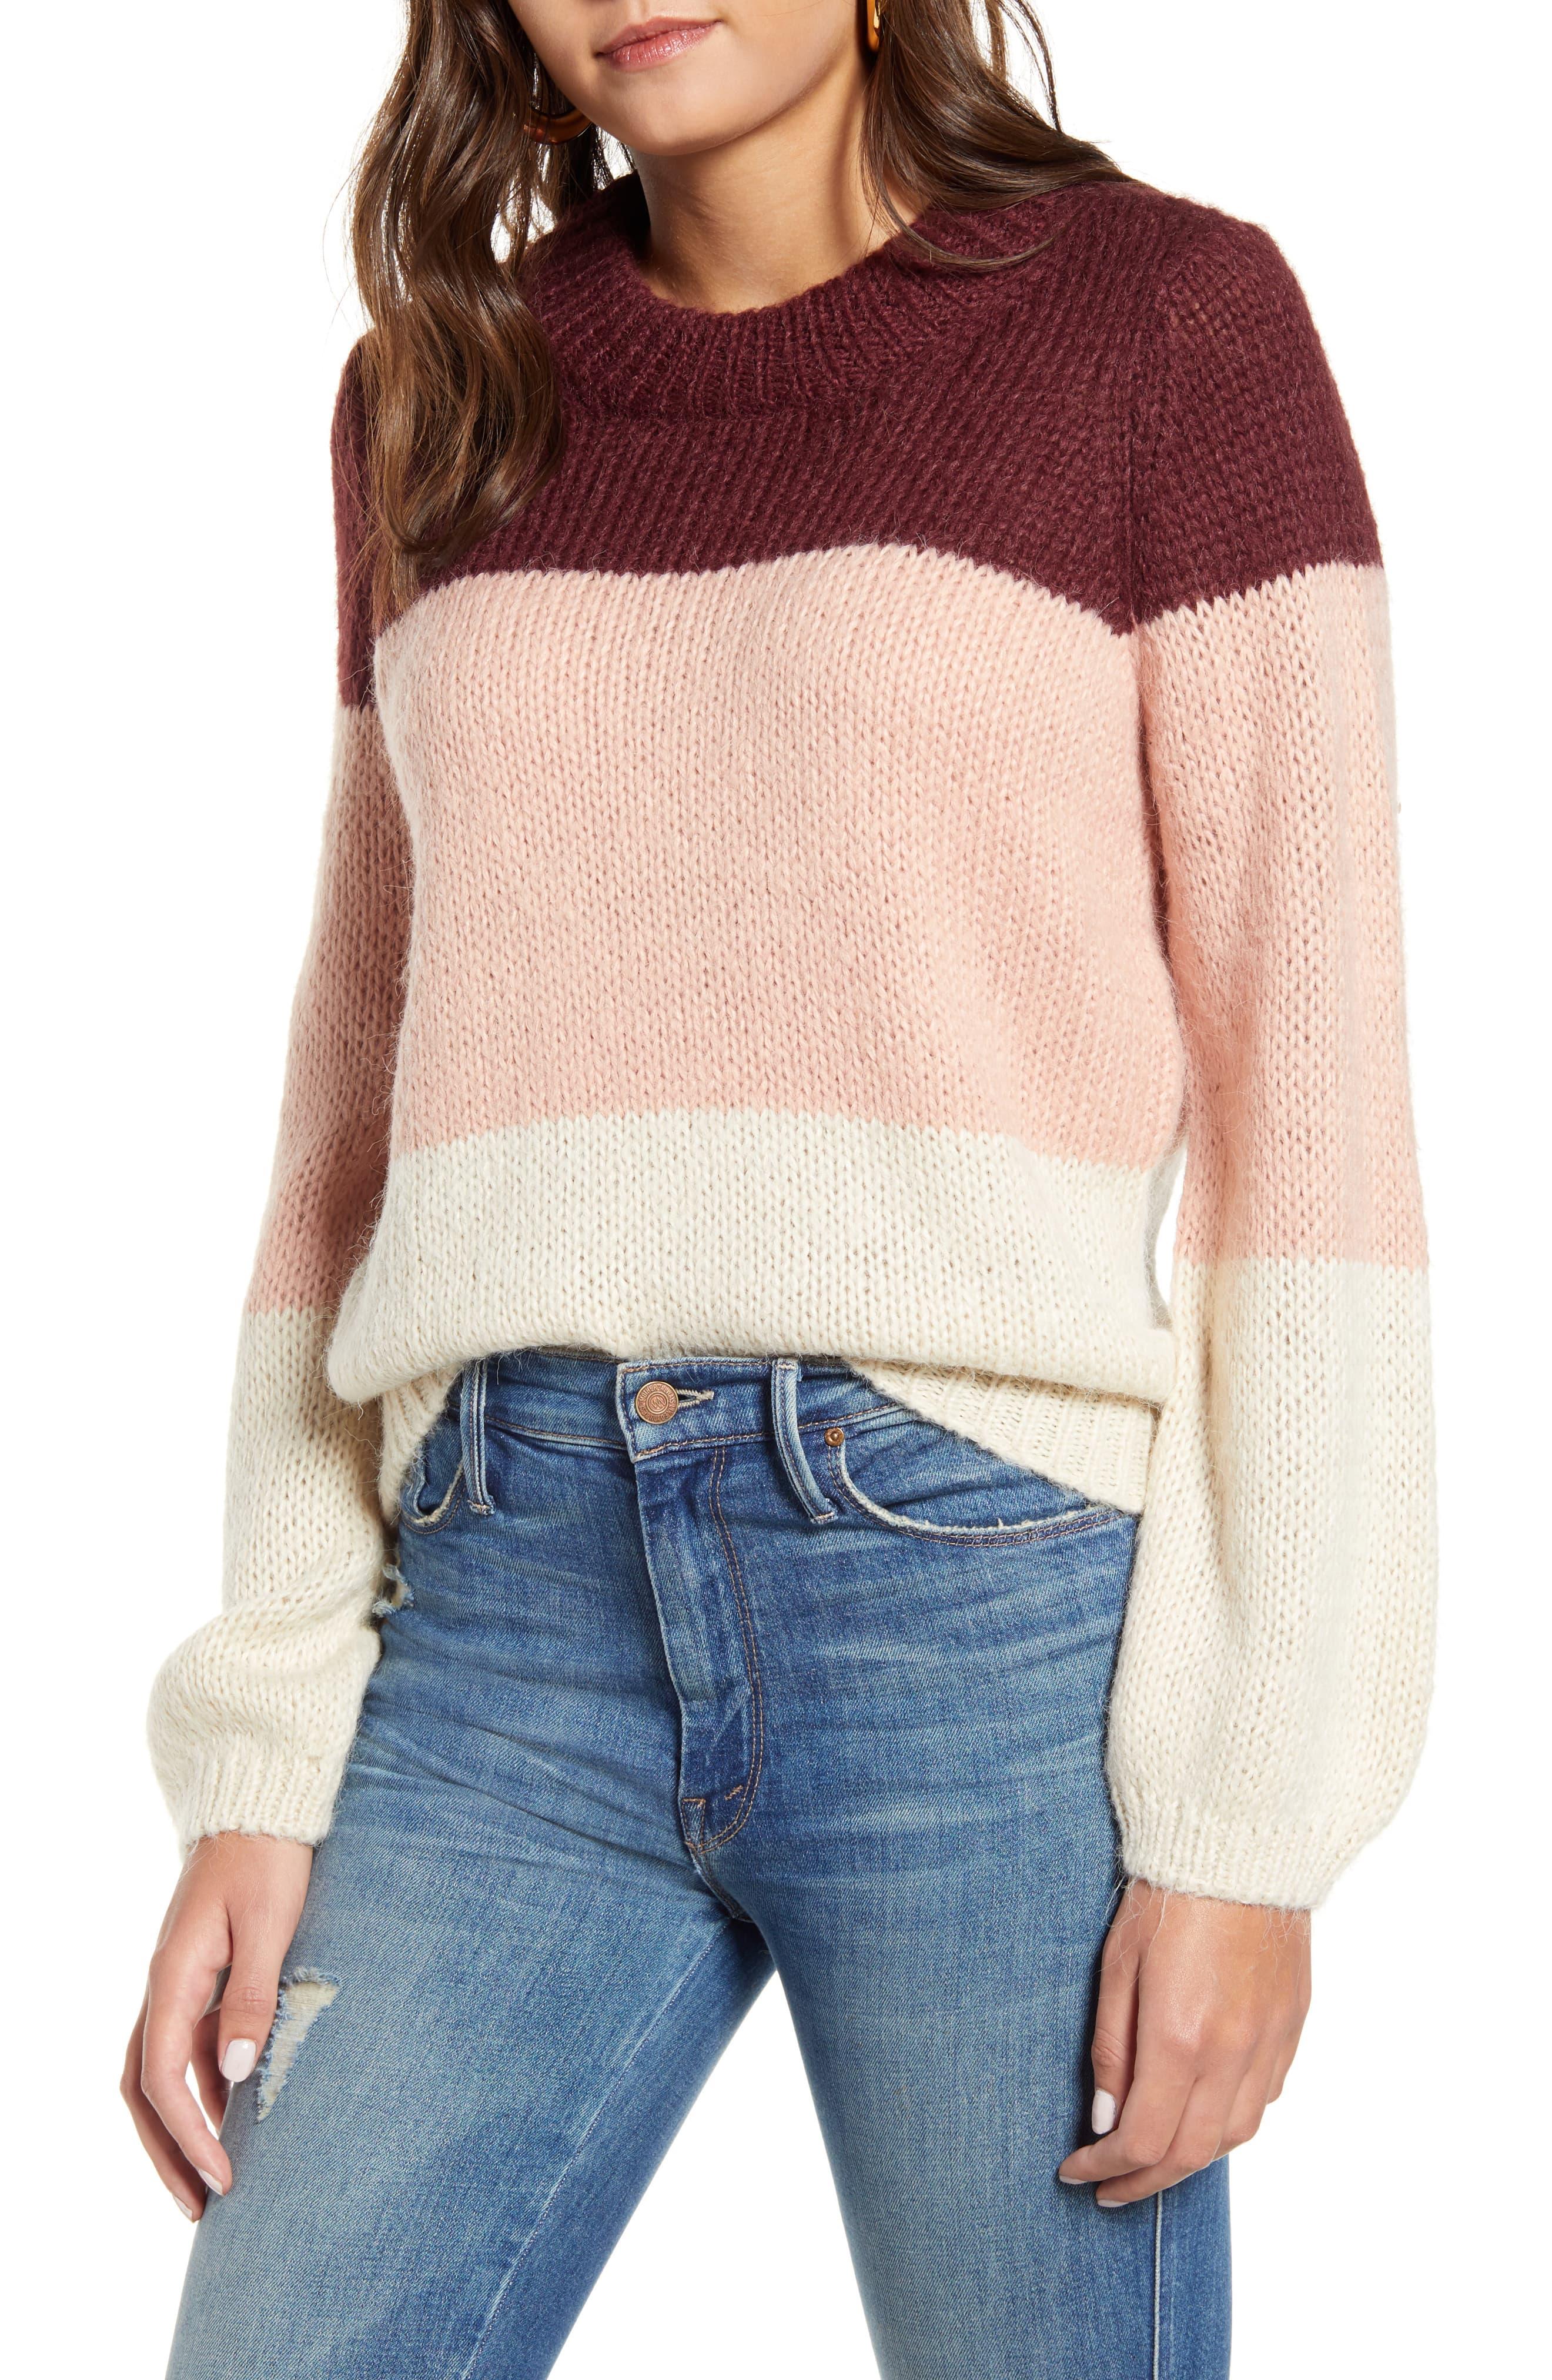 Vero Moda Wine Colorblock Crewneck Sweater - Lyst